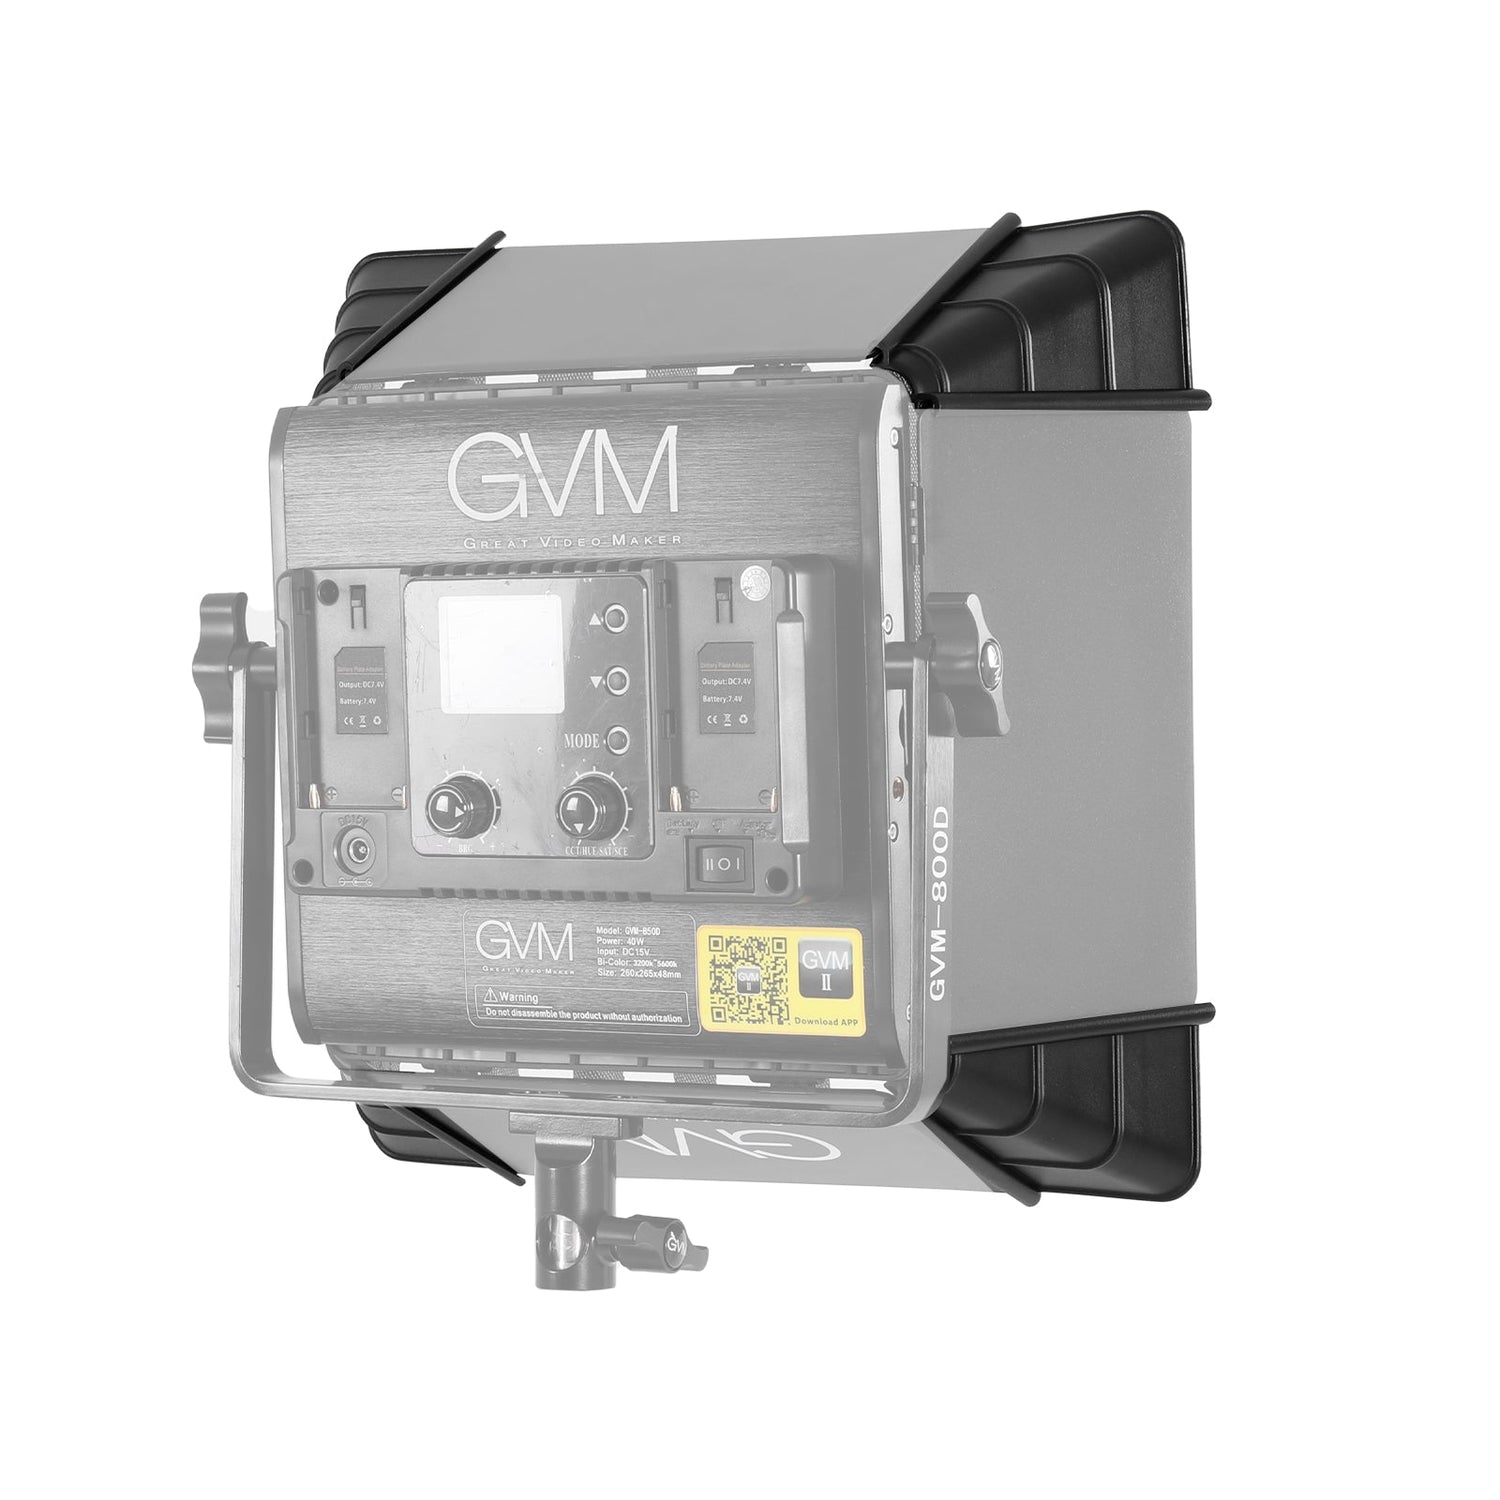 GVM Softbox for 480LS/560AS/800DRGB Series LED Lights (11 x 11